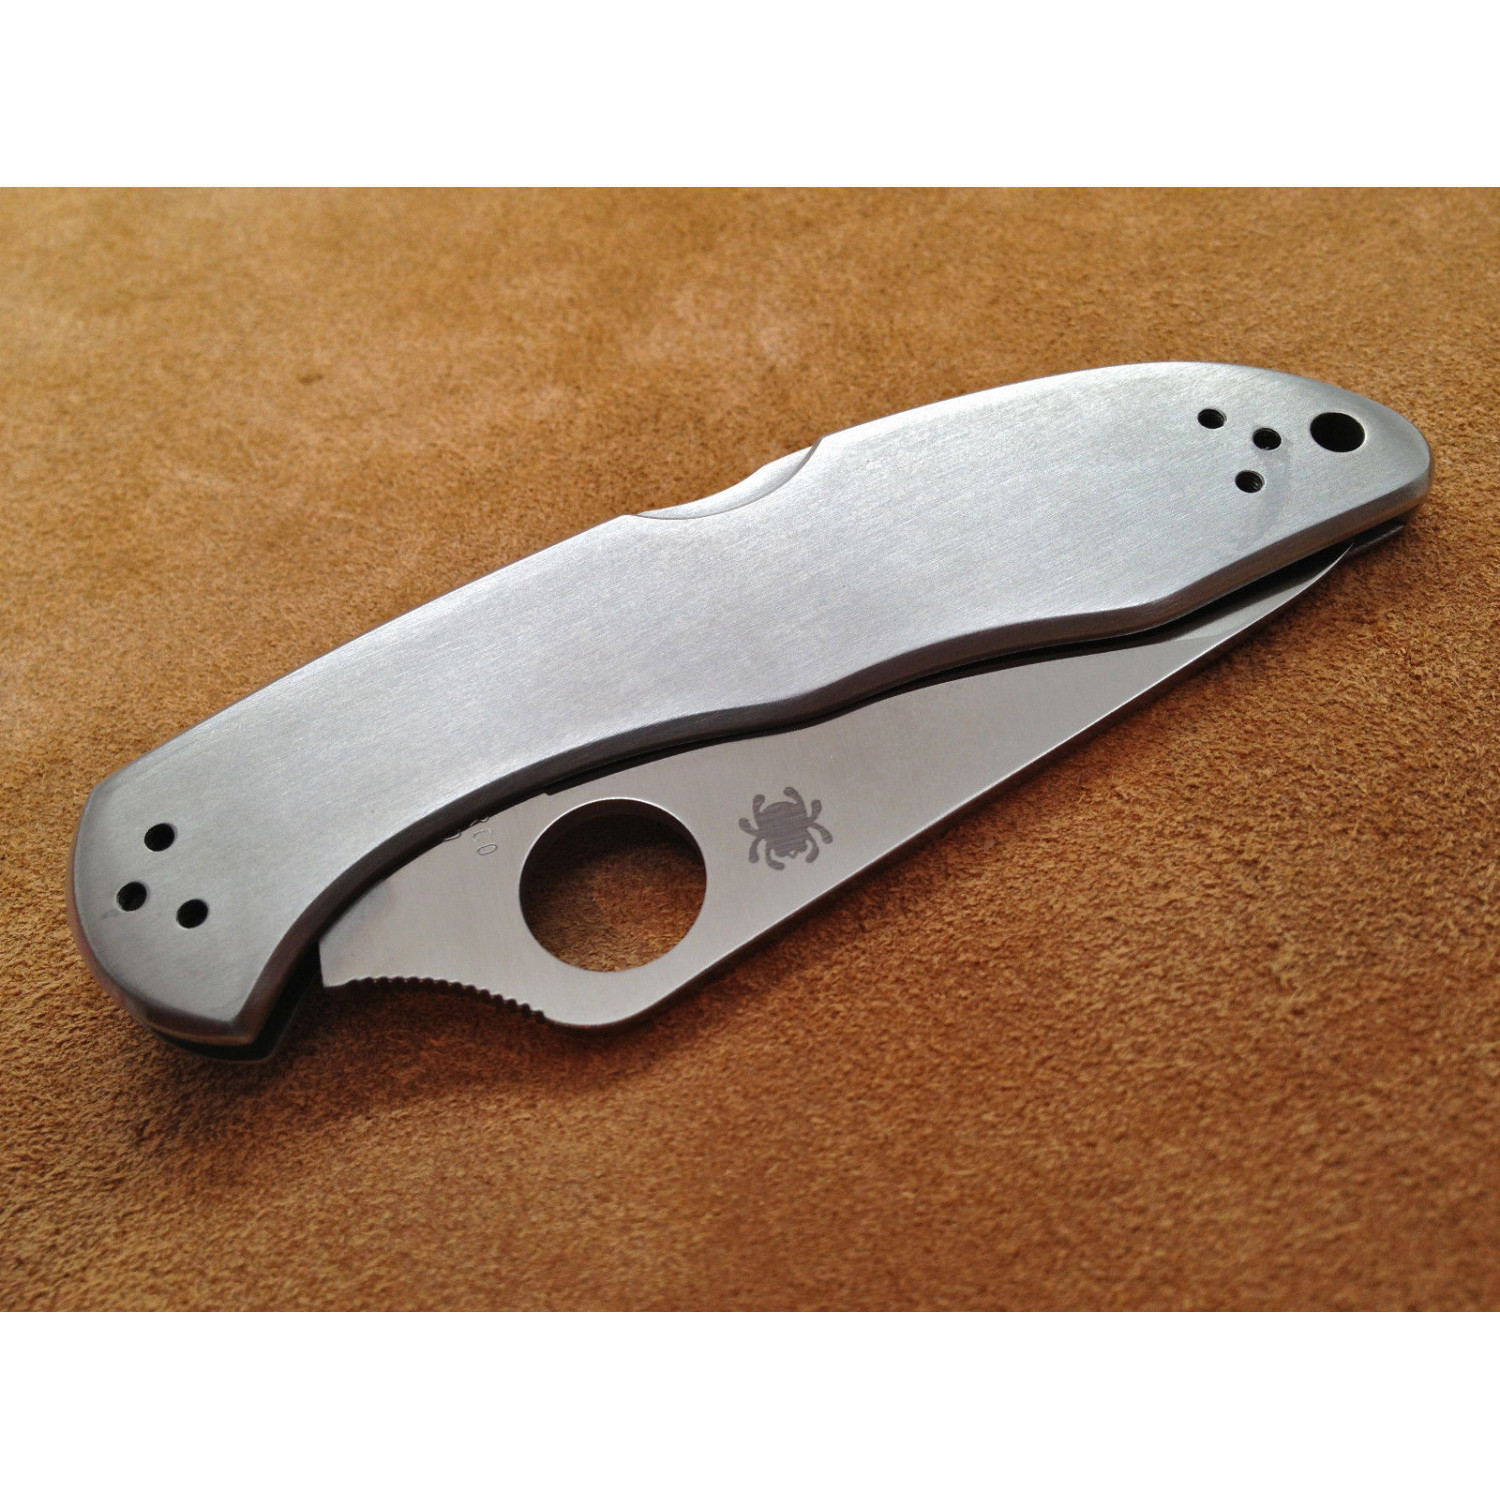 Складной нож Delica 4 - Spyderco C11P, сталь VG-10 Satin Plain, рукоять нержавеющая сталь - фото 3